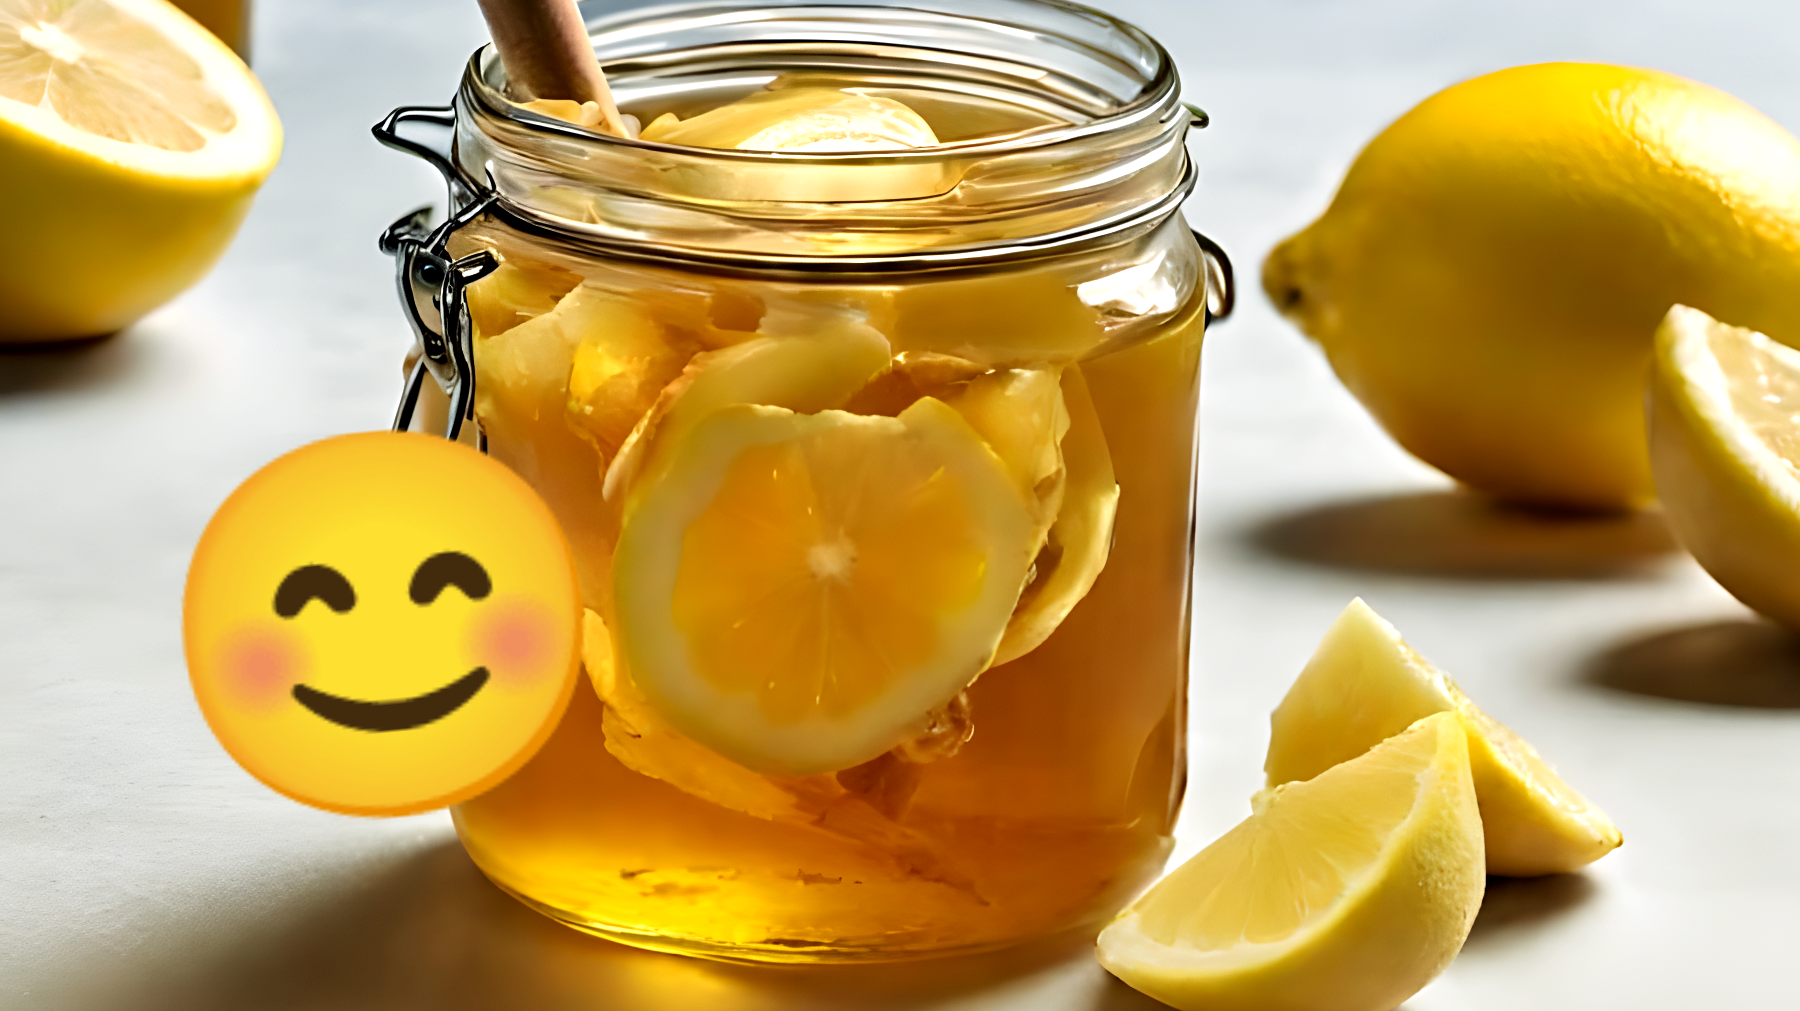 Scopri l'incredibile rimedio segreto che pochissime persone conoscono: mischiando miele, zenzero e limone succede qualcosa di incredibile